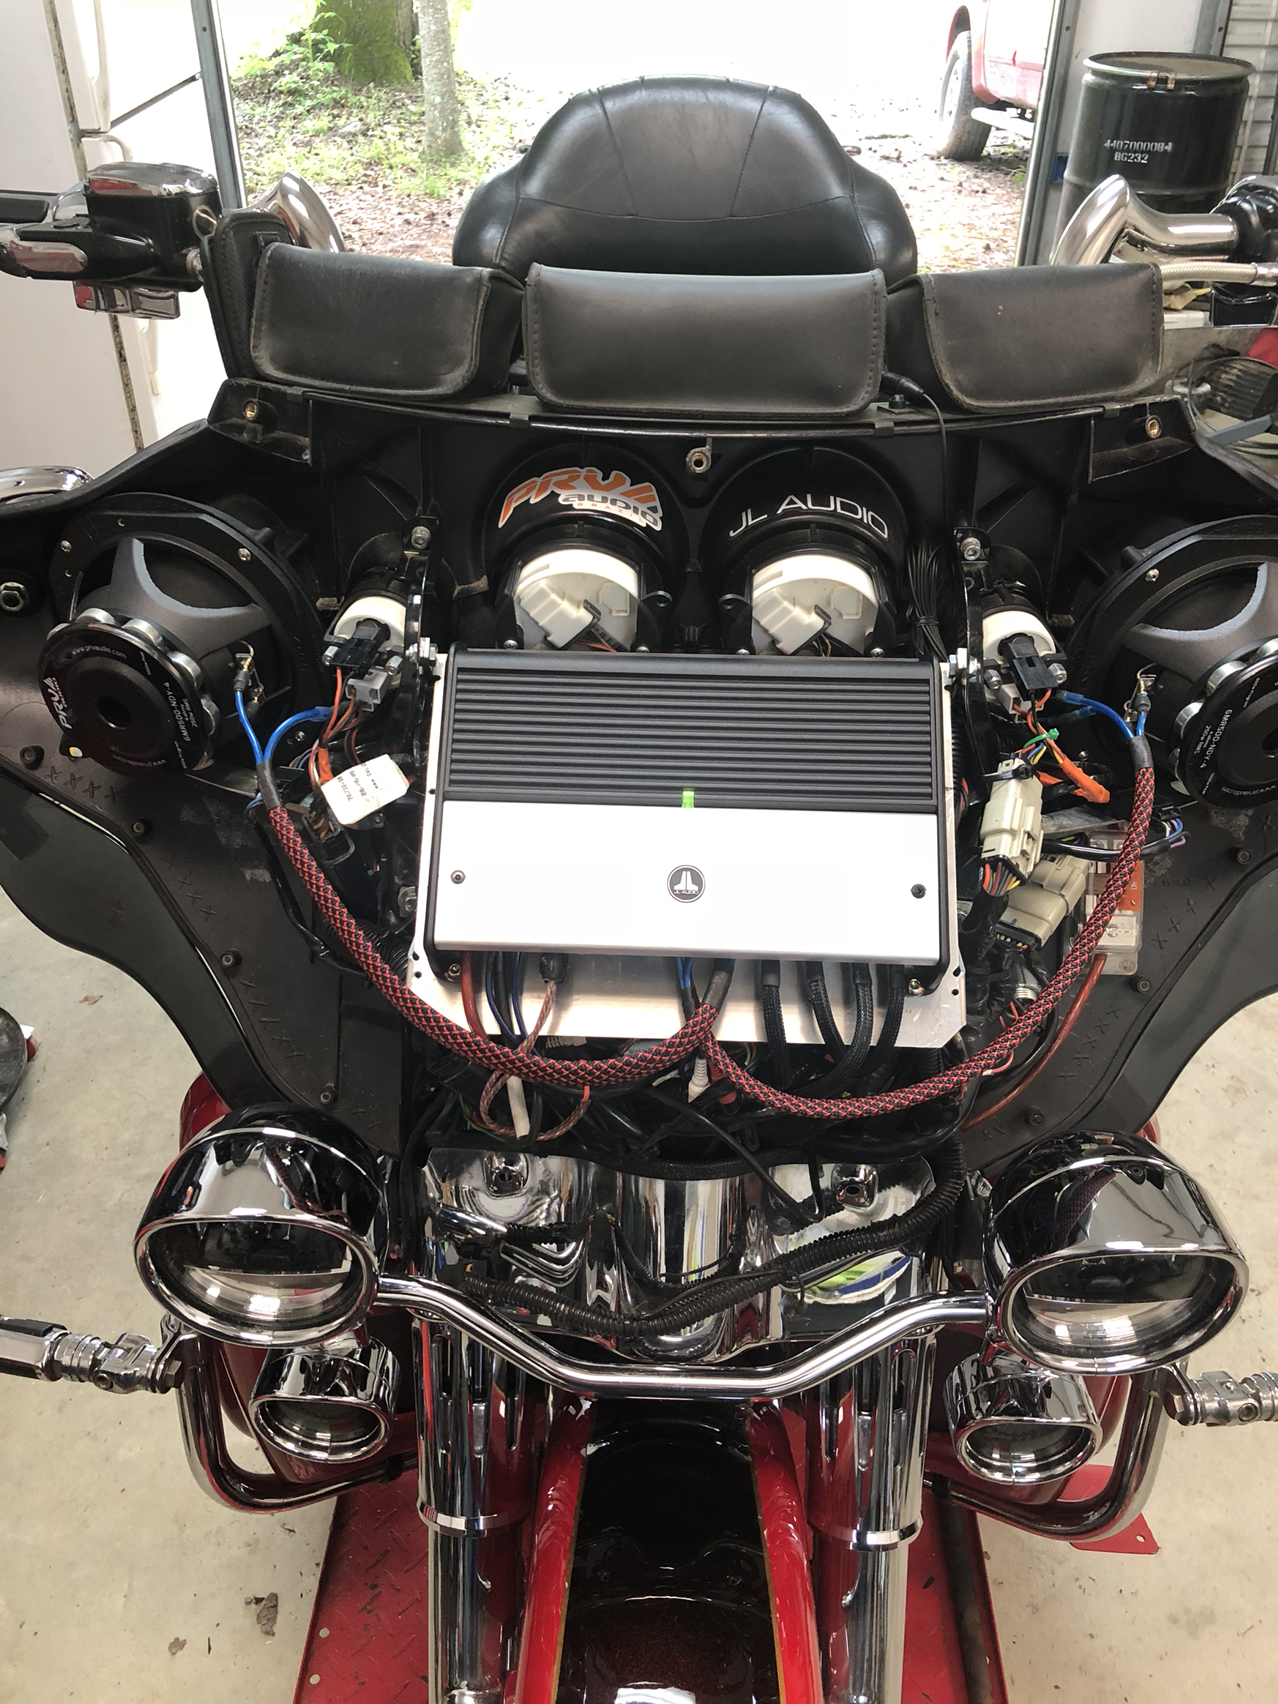 Jl Audio Amps For Harley Davidson Online